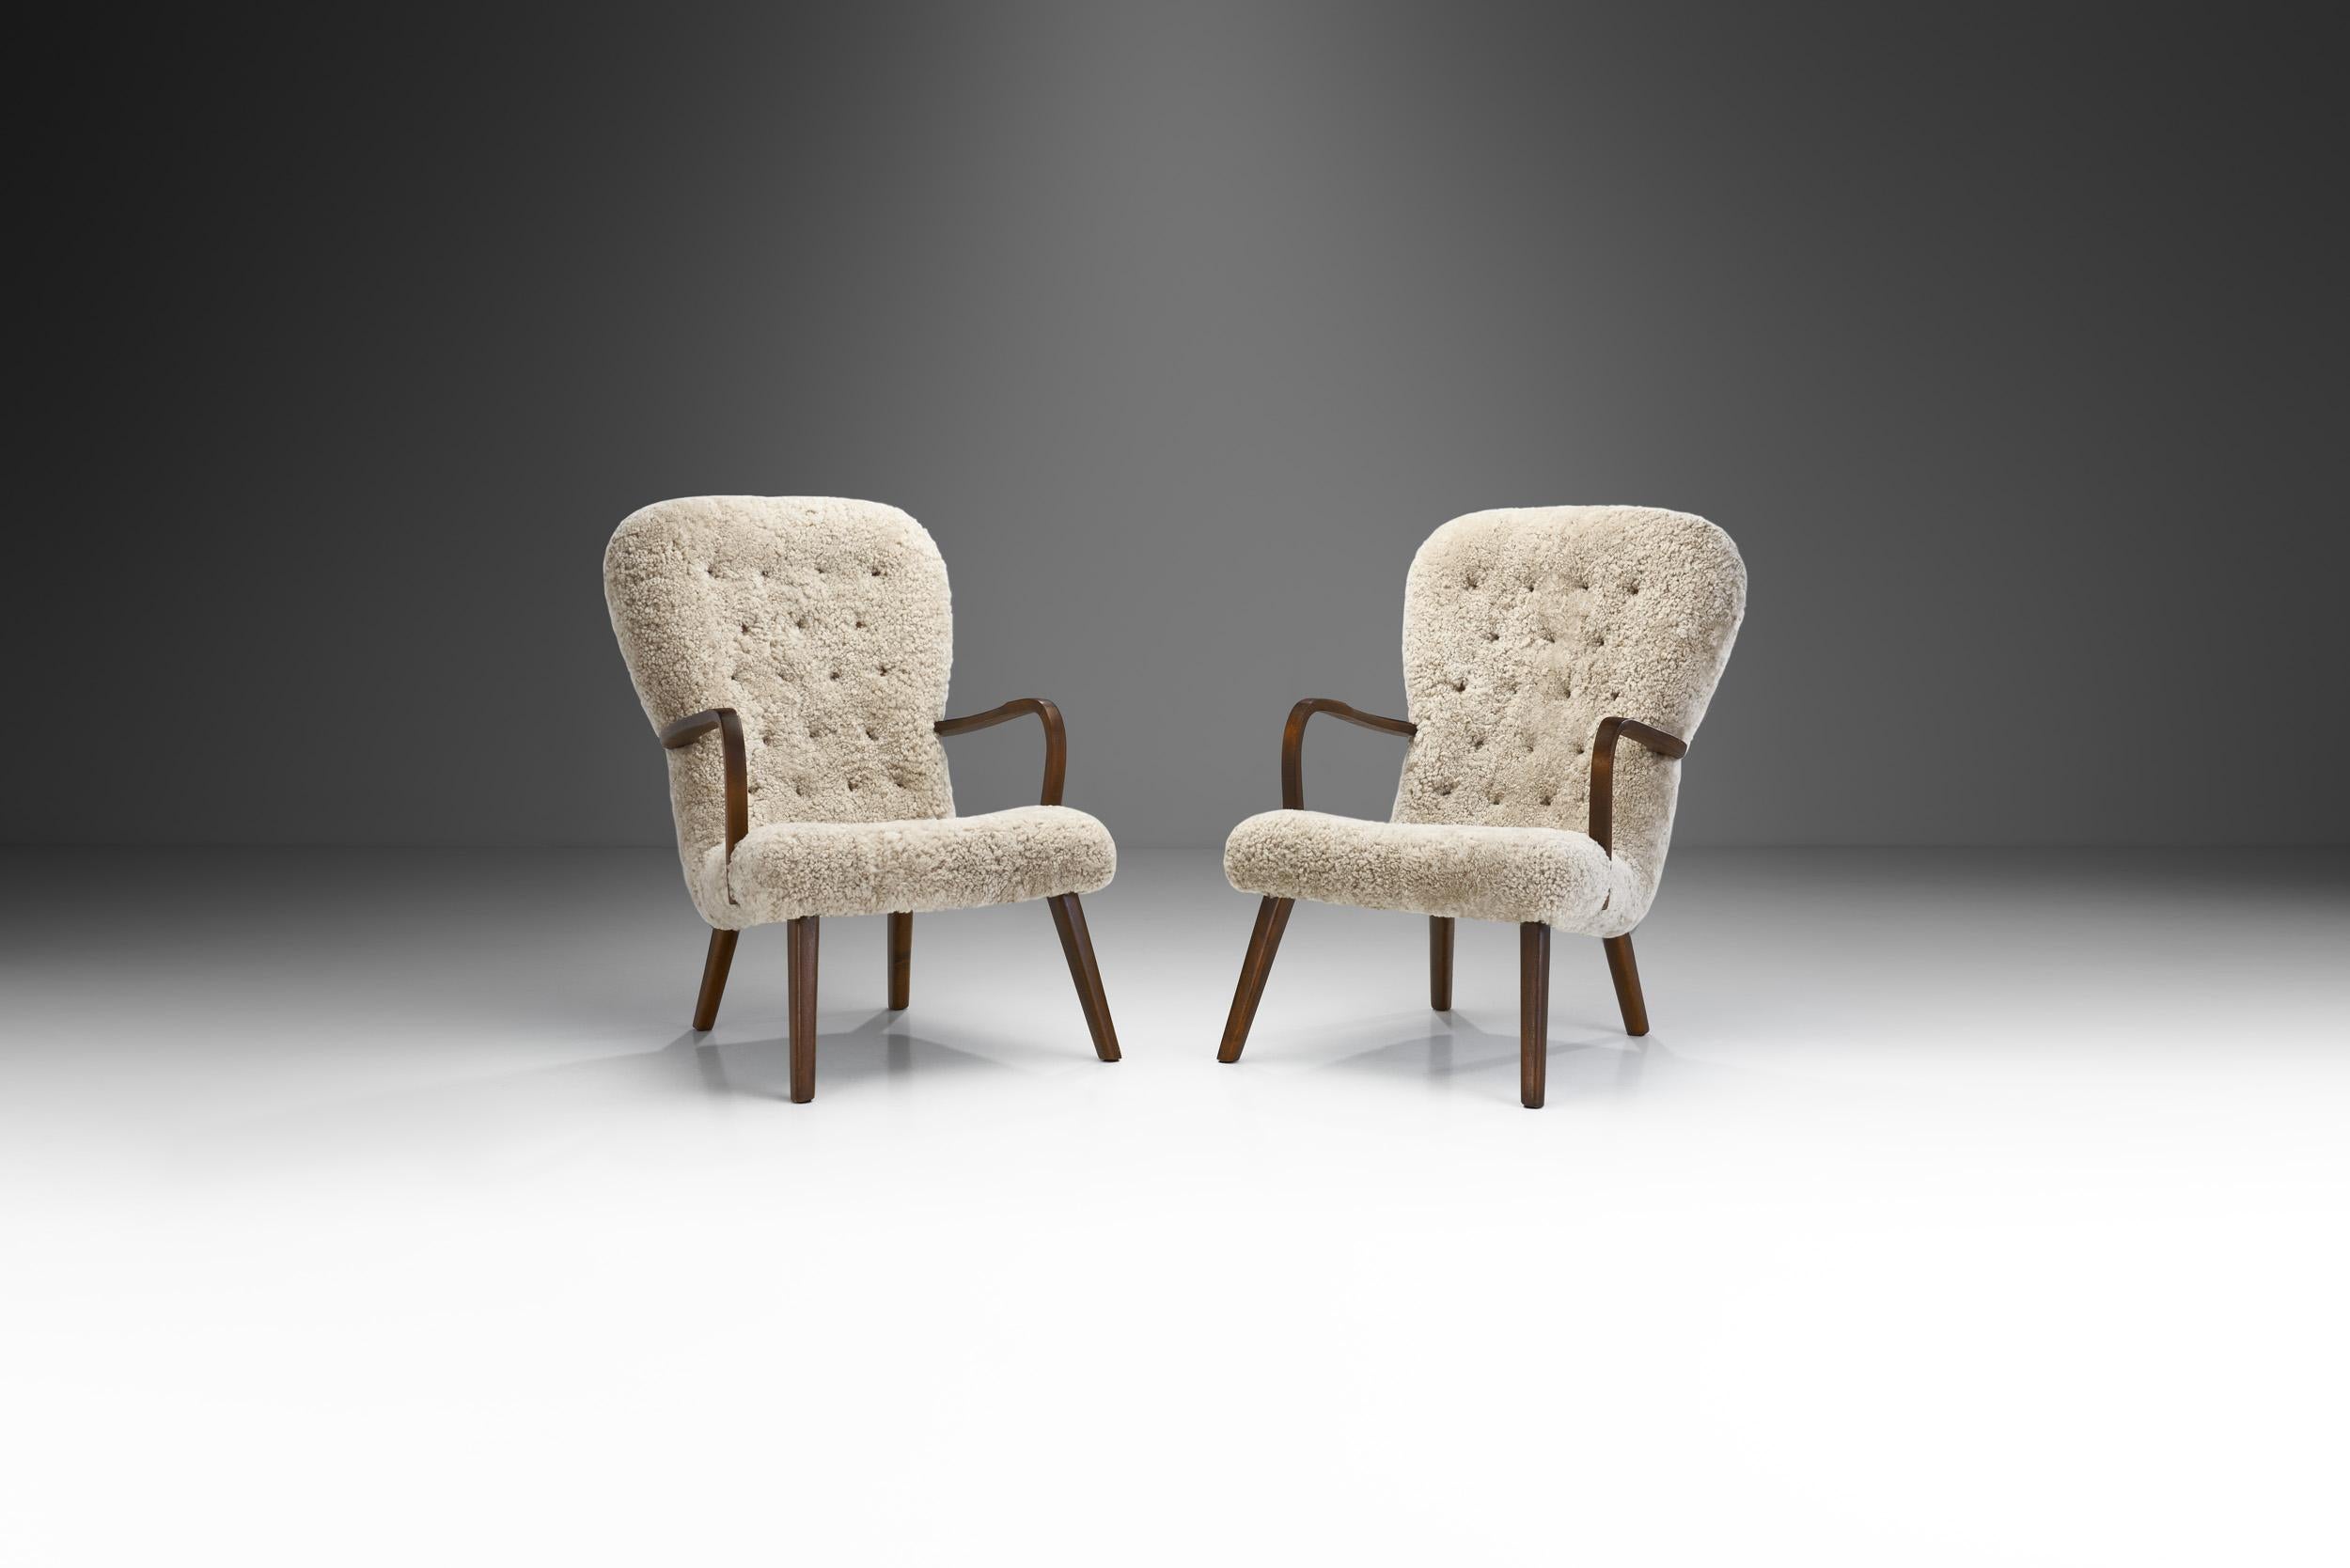 Bei diesem Paar Sessel aus der Mitte des Jahrhunderts stehen hochwertige Materialien, Komfort und die Kunstfertigkeit dänischer Tischler im Mittelpunkt.

Das dänische Design ist eine bemerkenswerte Kombination aus Komfort und Materialität, gepaart